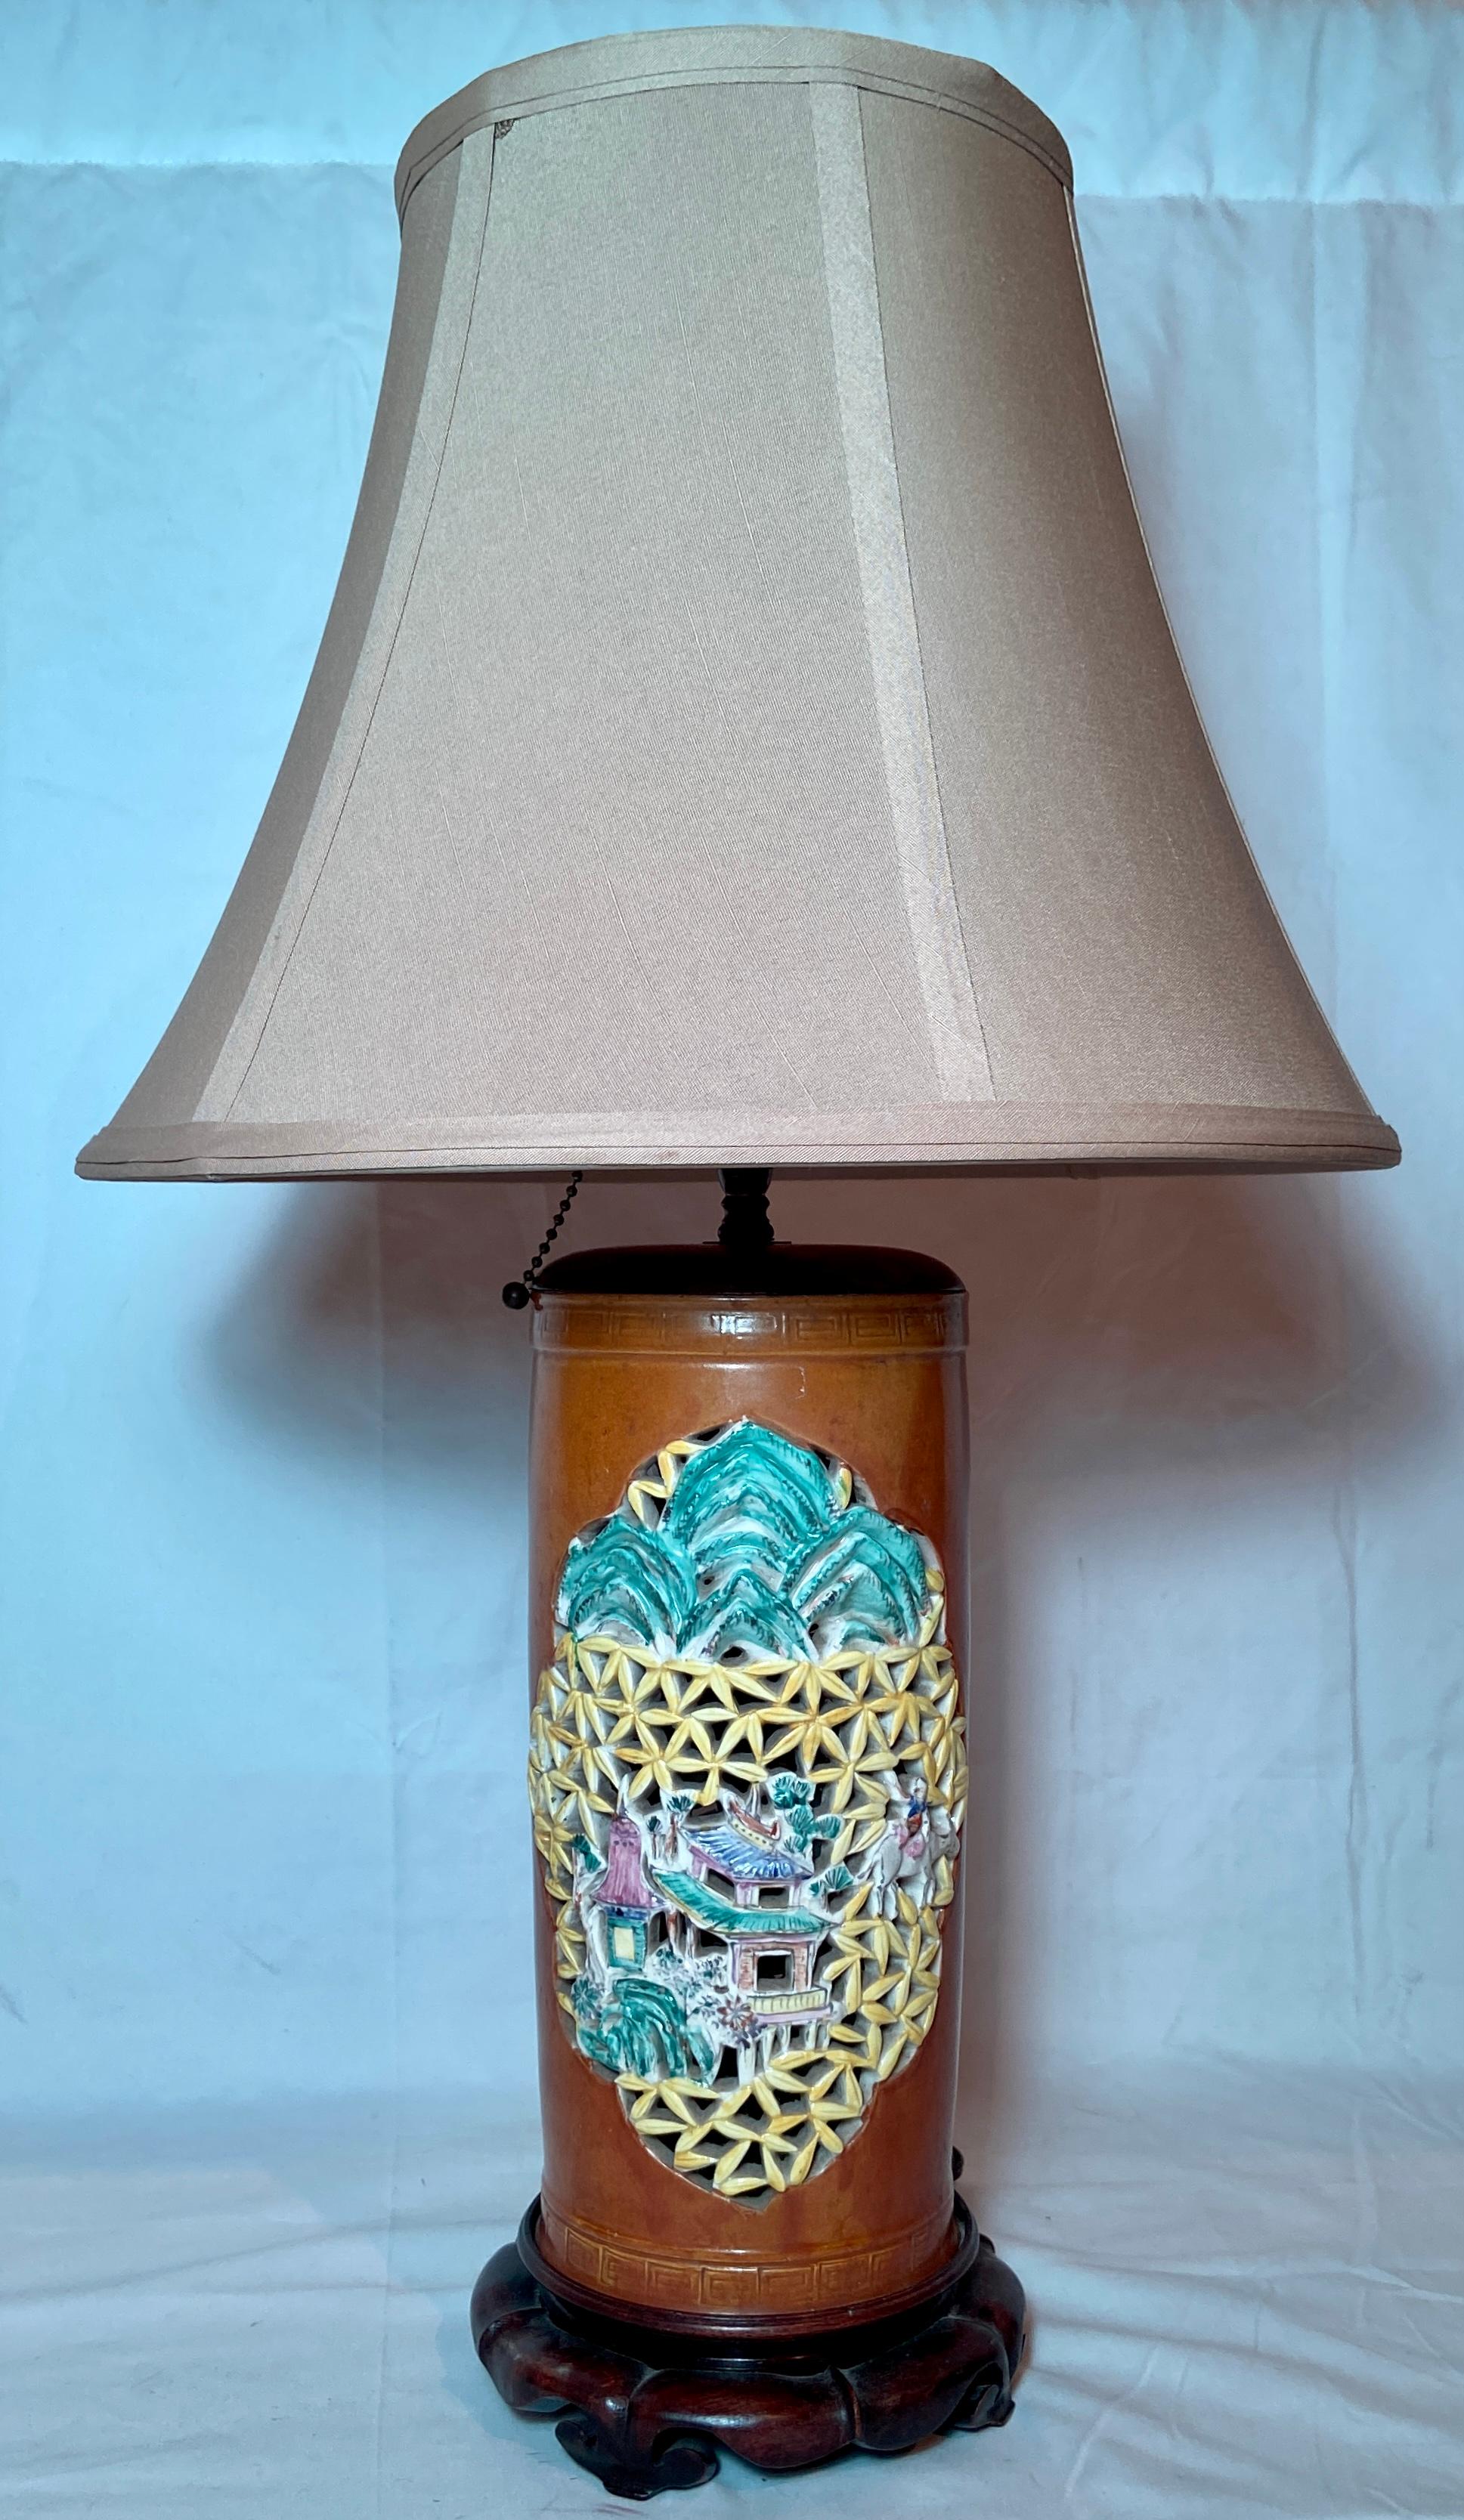 Paire de lanternes anciennes en porcelaine céramique chinoise transformées en lampes, Circa 1890-1900.